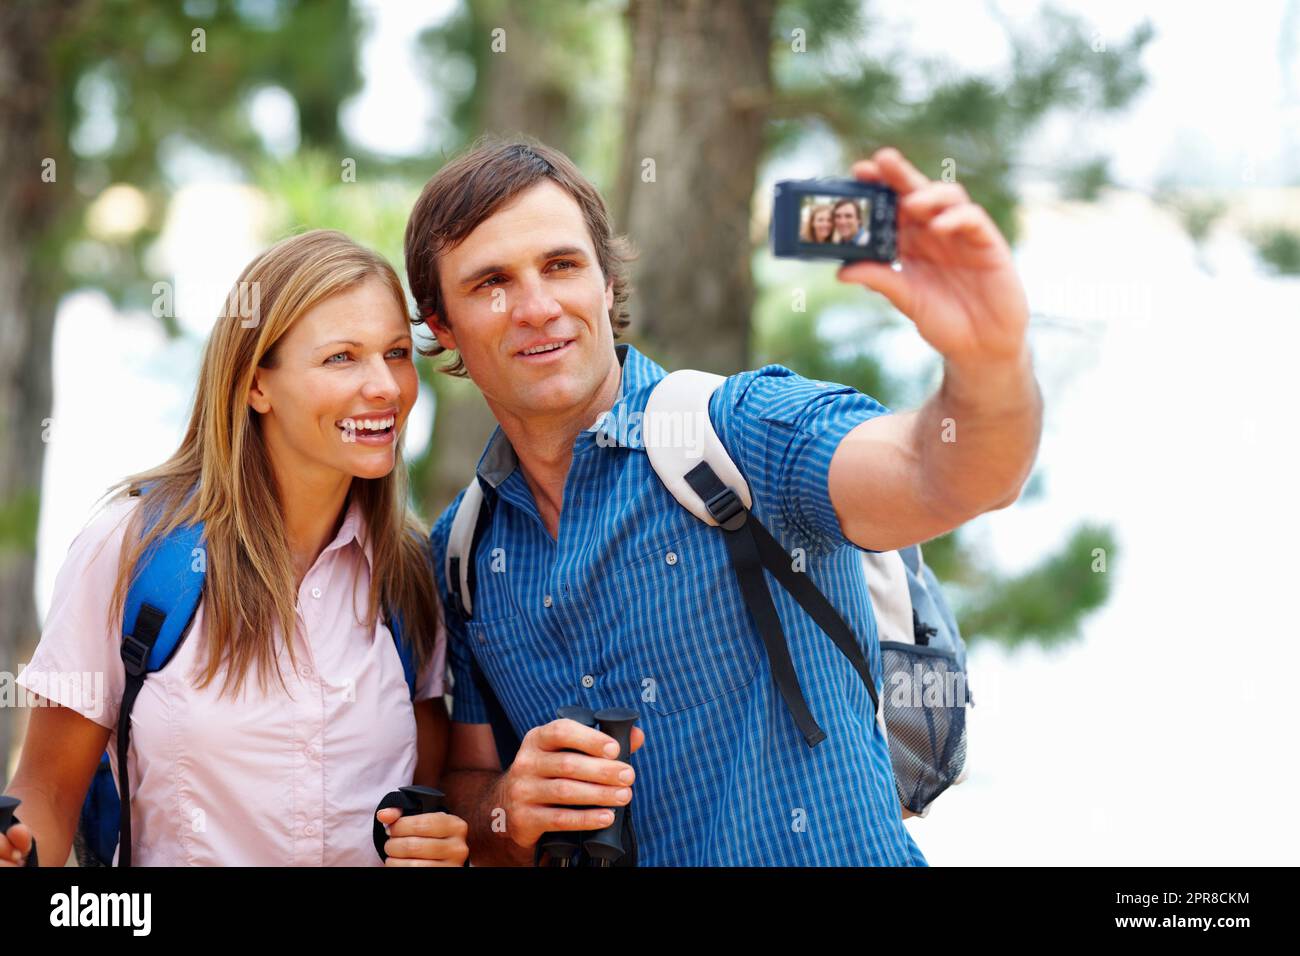 Souvenirs de randonnée. Couple prenant une photo d'eux-mêmes pendant la randonnée. Banque D'Images